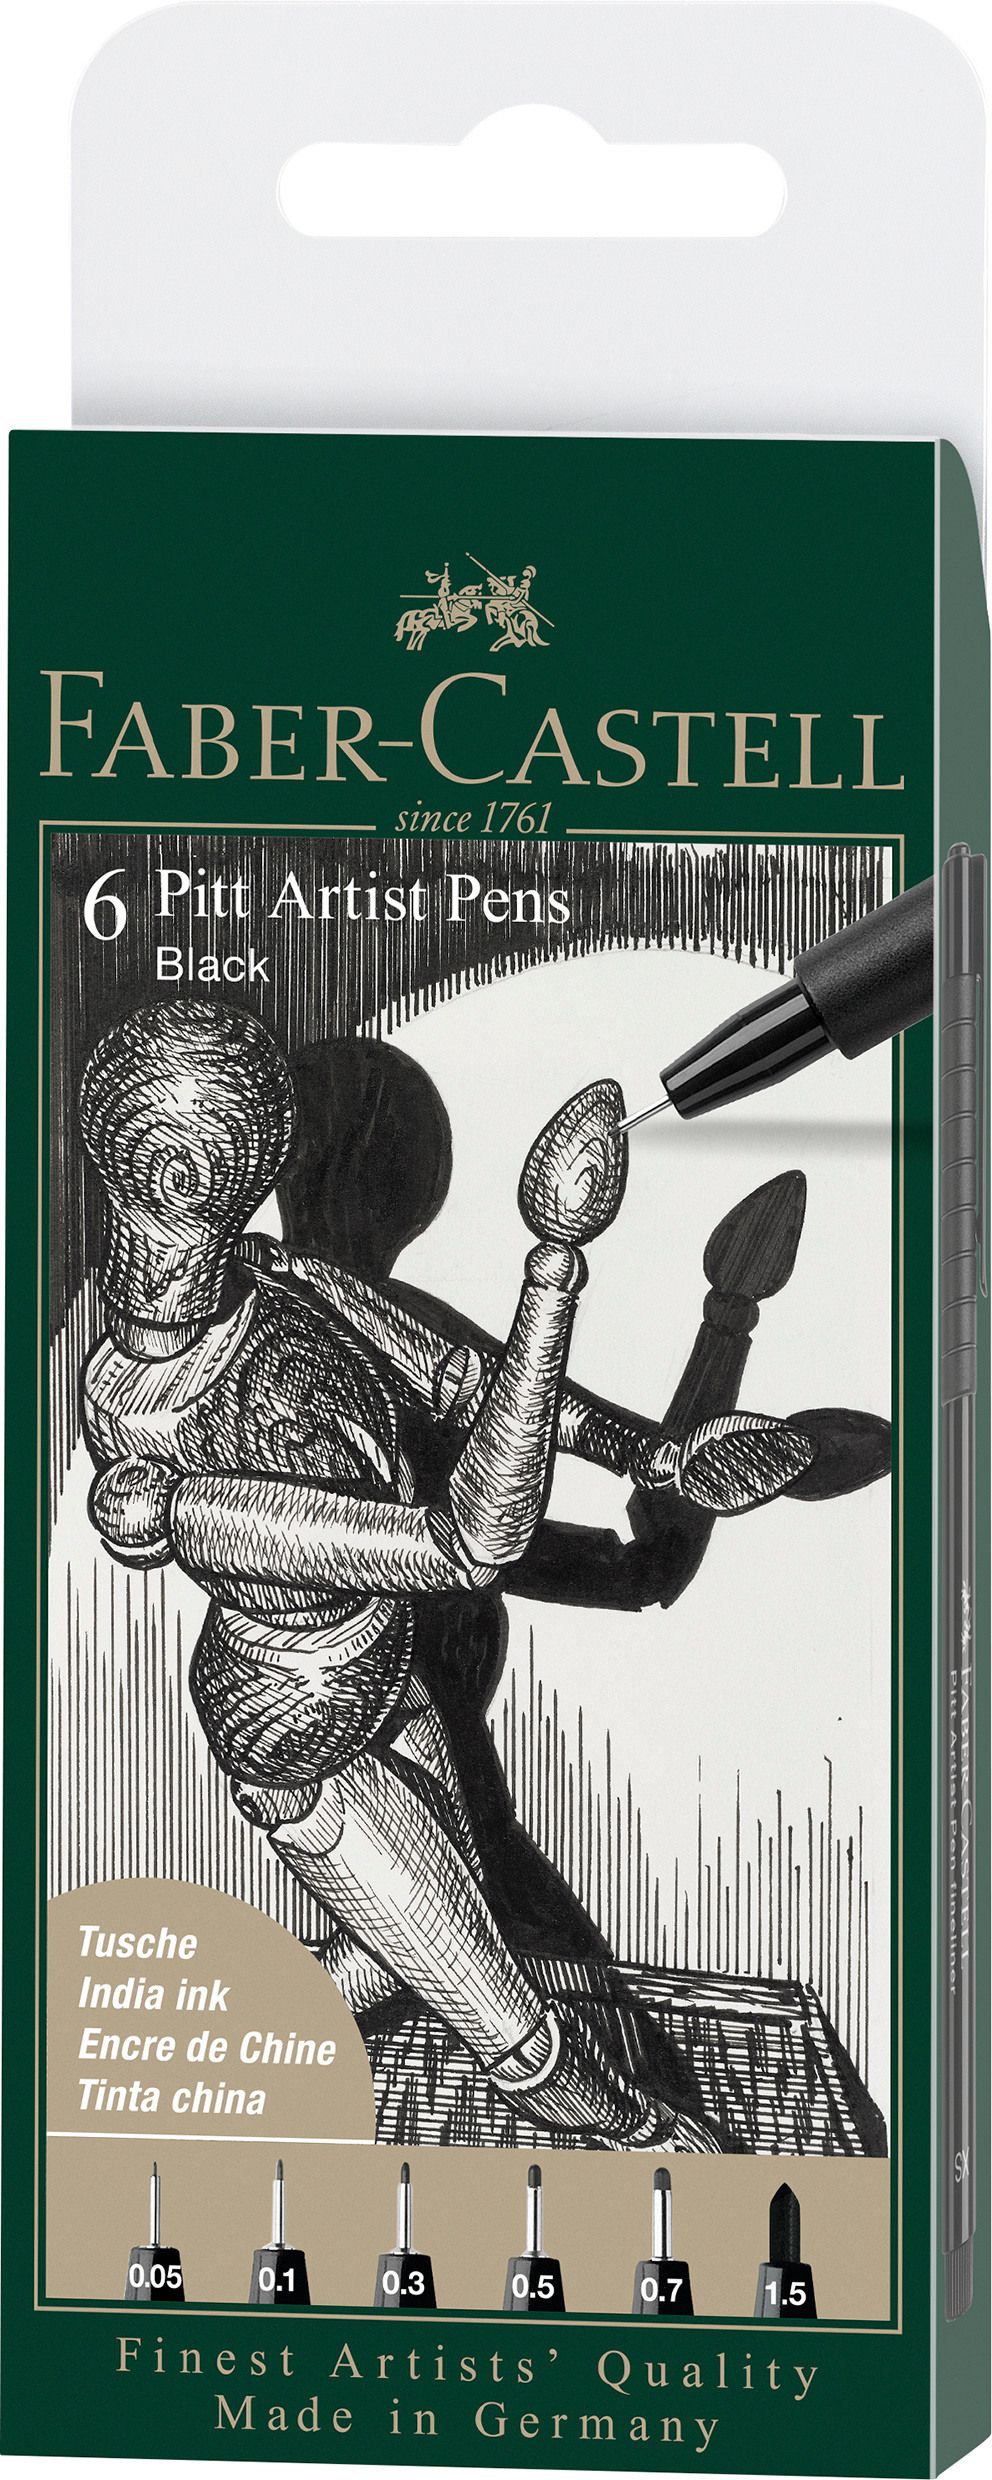 Faber Castell - 6 pitt Artist Pen, brush - Black (167154), Faber-Castell